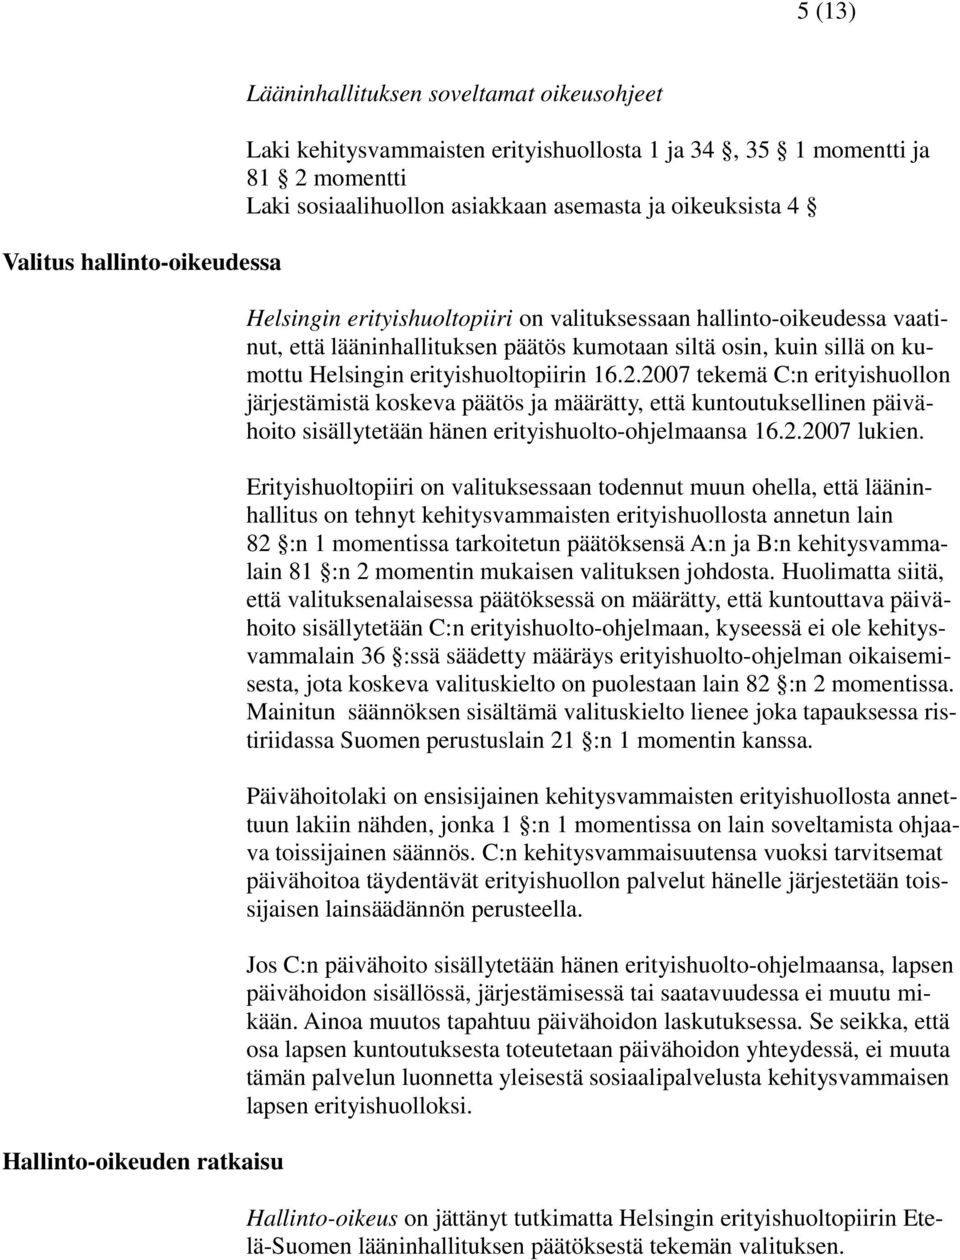 kumottu Helsingin erityishuoltopiirin 16.2.2007 tekemä C:n erityishuollon järjestämistä koskeva päätös ja määrätty, että kuntoutuksellinen päivähoito sisällytetään hänen erityishuolto-ohjelmaansa 16.